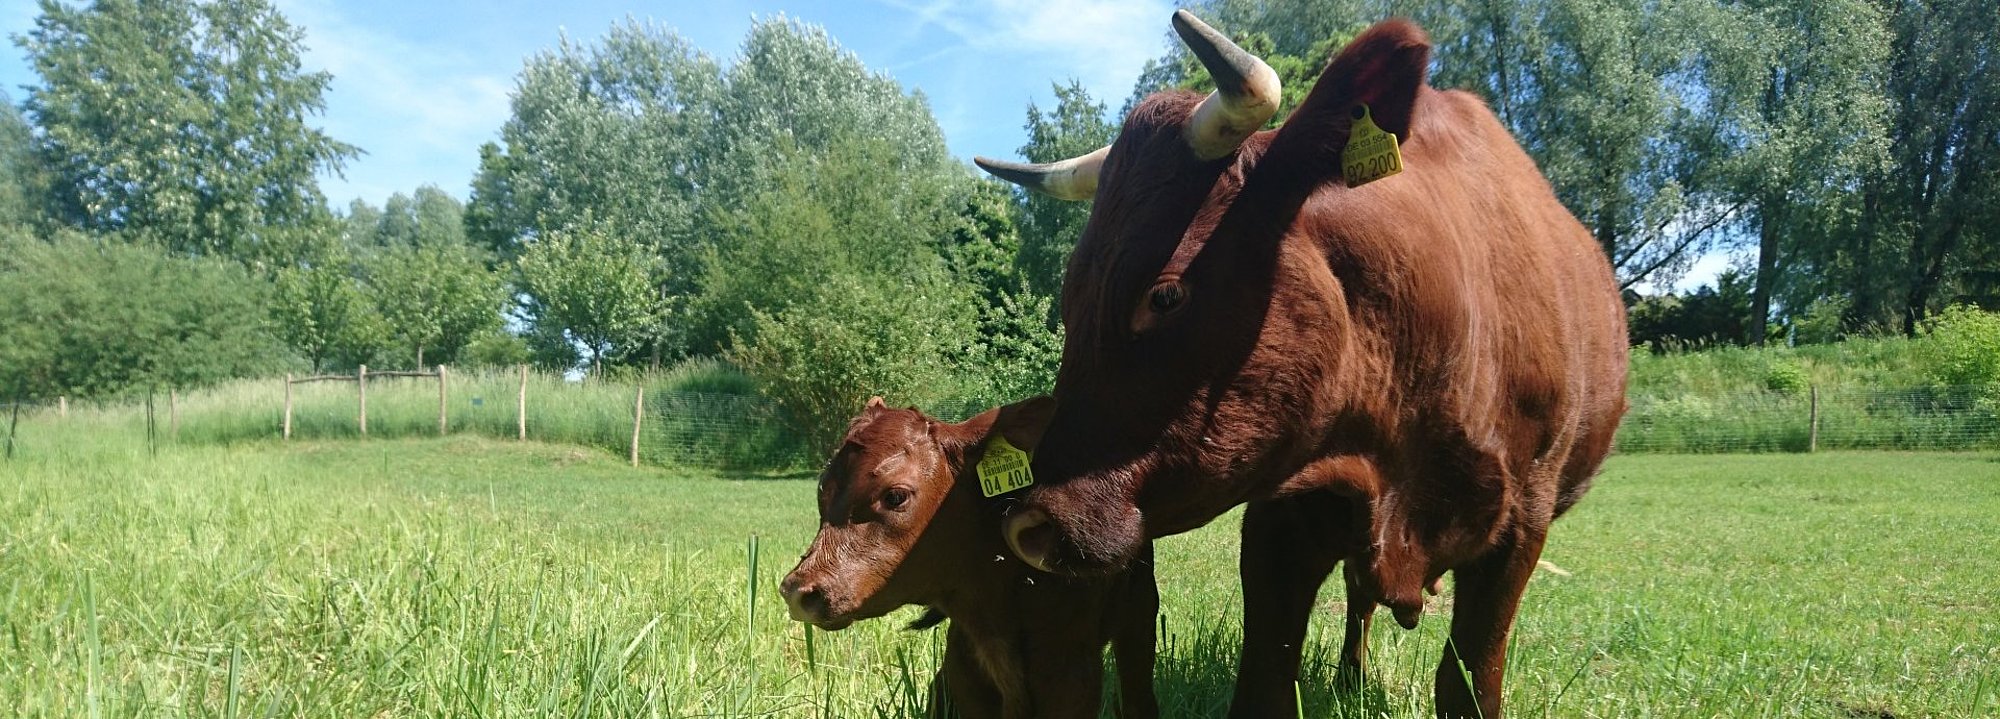 Rinder auf einer grünen Wiese im Kienbergpark